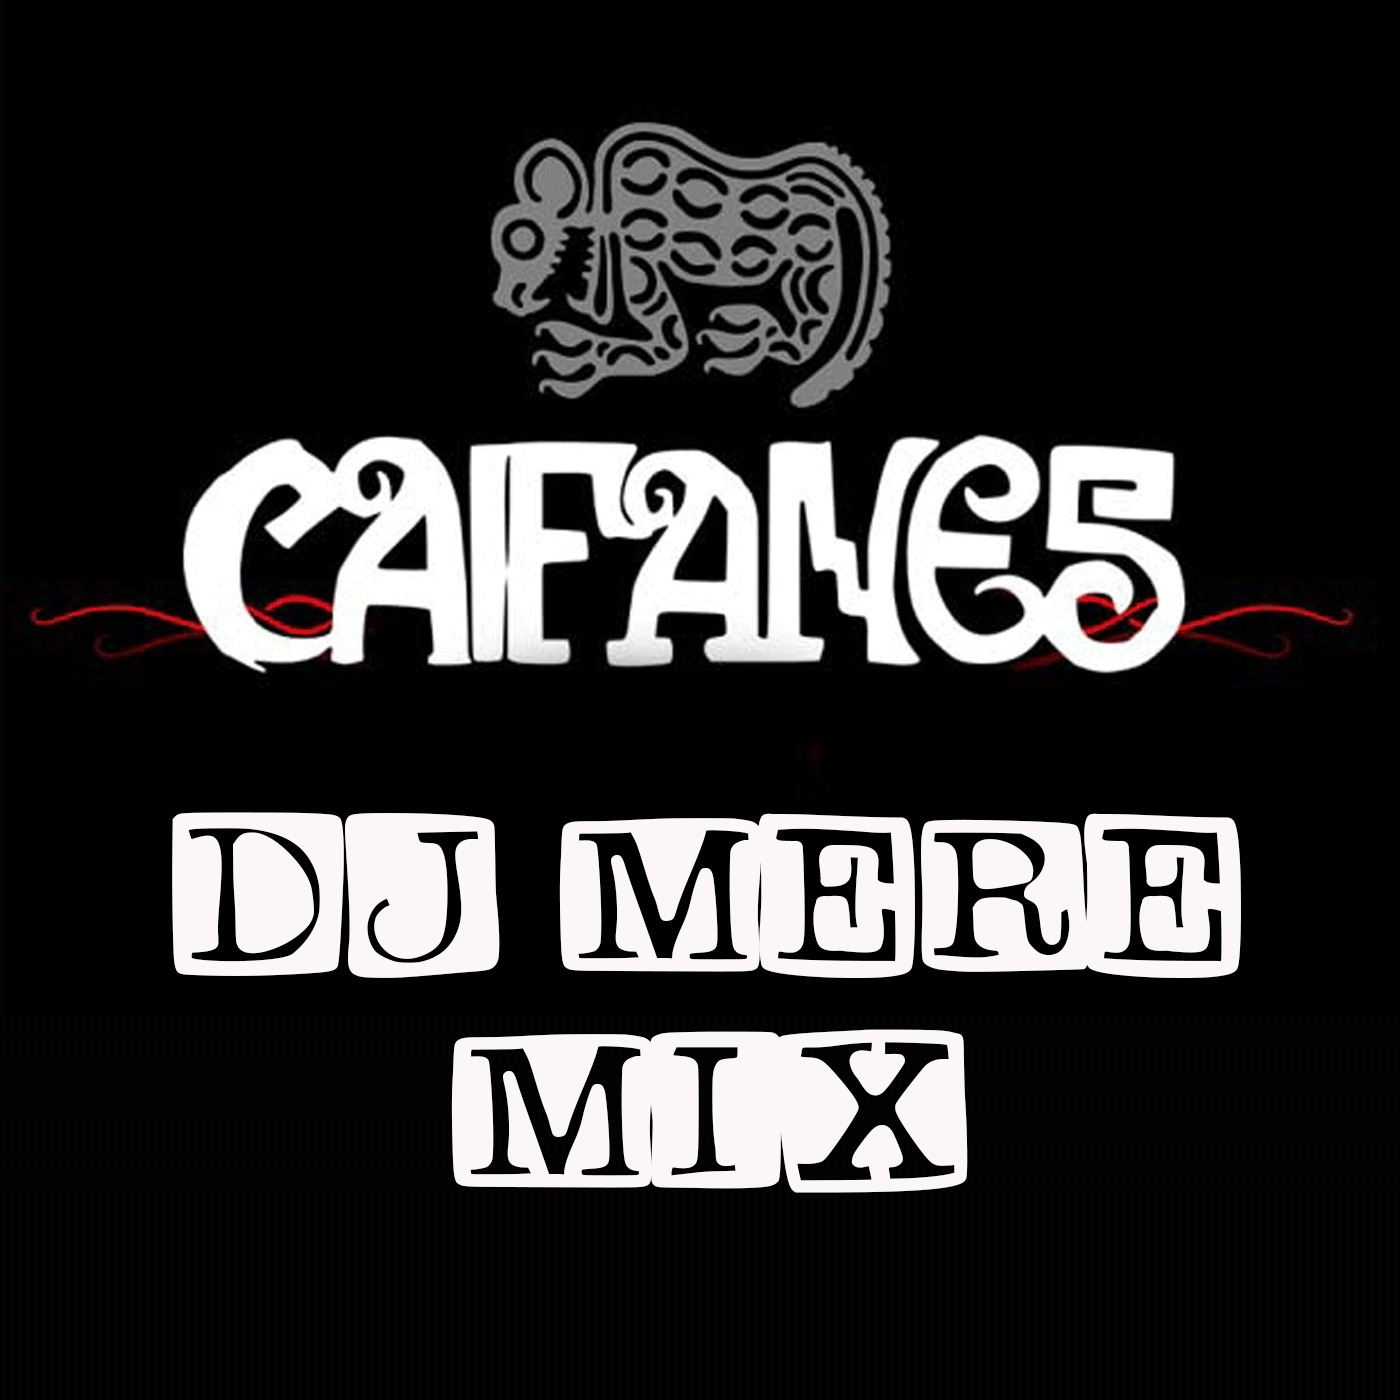 DJ MERE - CAIFANES, JAGUARES MIX